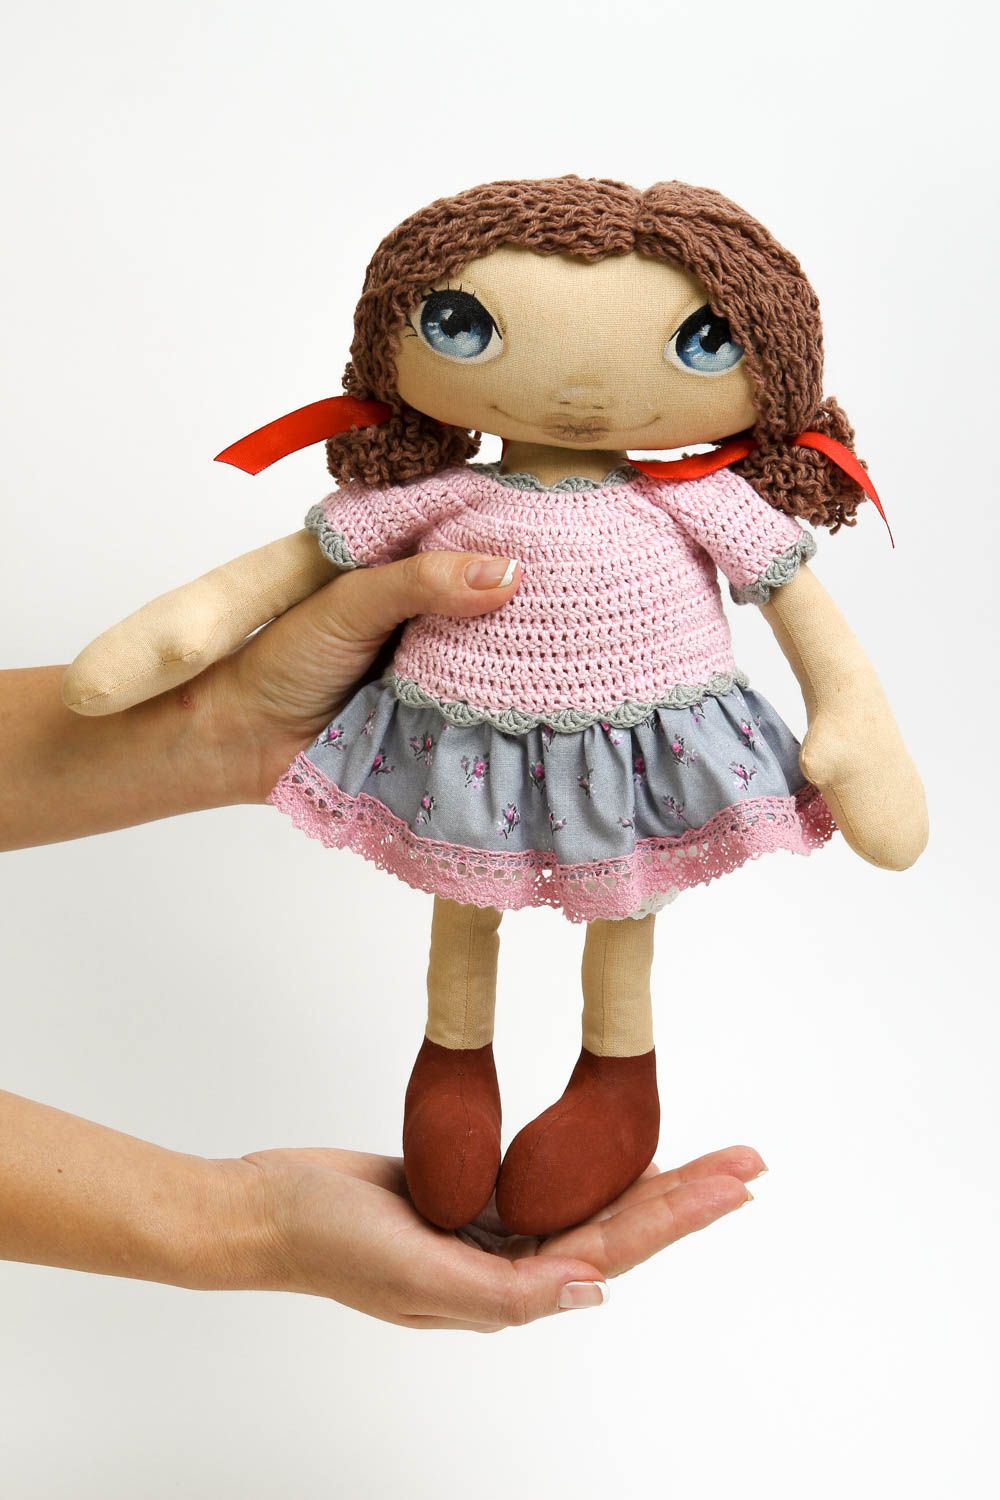 Handmade soft toy girl doll designer toys homemade home decor gifts for girls photo 5